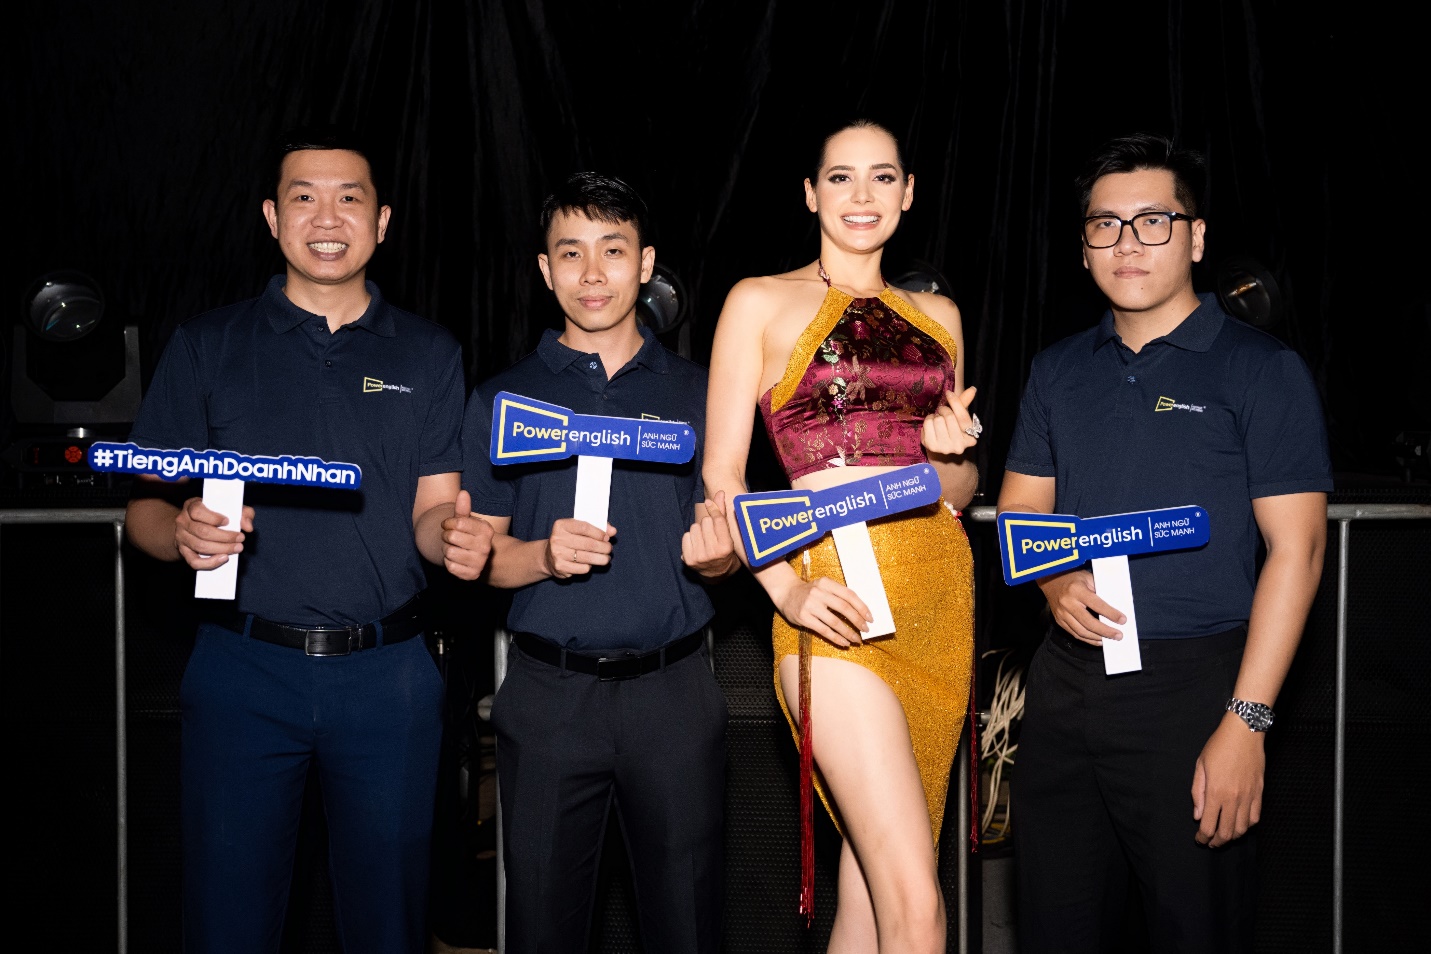 Power English cùng Công ty Sen Vàng thành công giới thiệu Việt Nam đến bạn bè quốc tế - Ảnh 3.